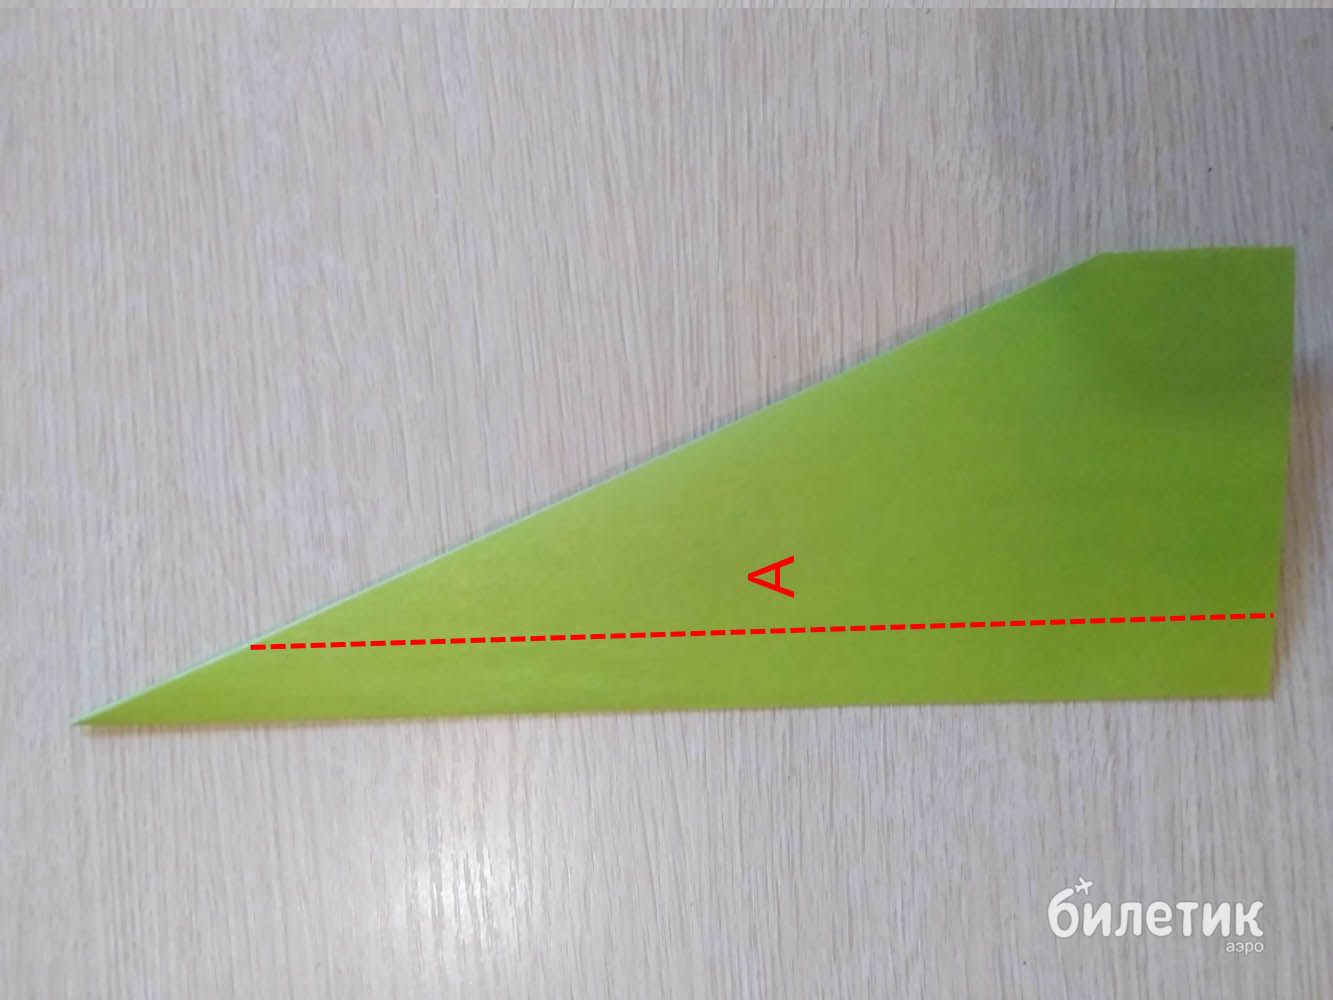 Как сделать самолётики из бумаги: самые простые способы